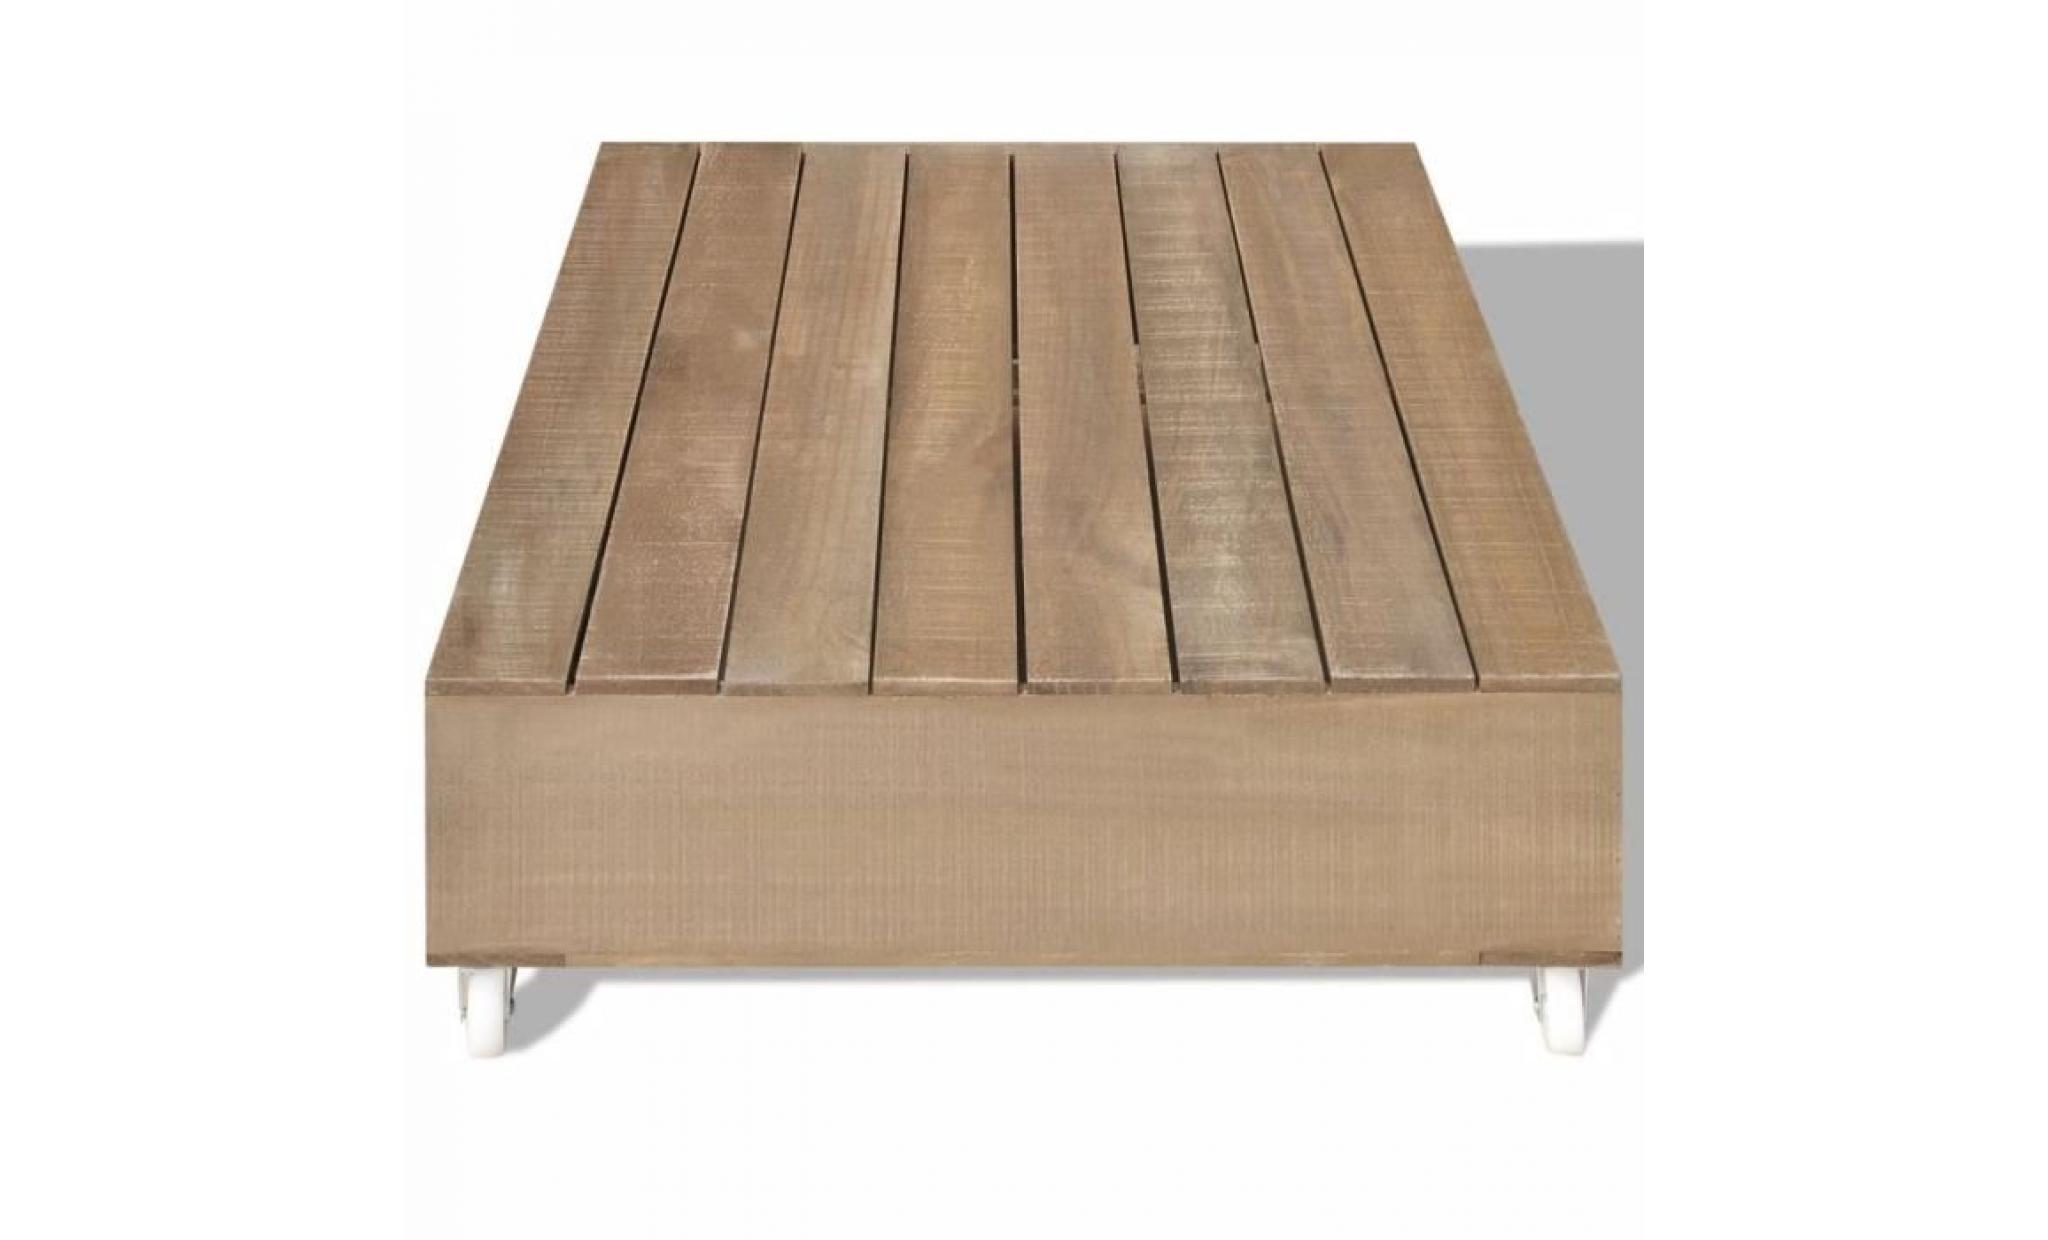 table basse bois massif marron table basse scandinave table bass style contemporain table console table de lit pas cher